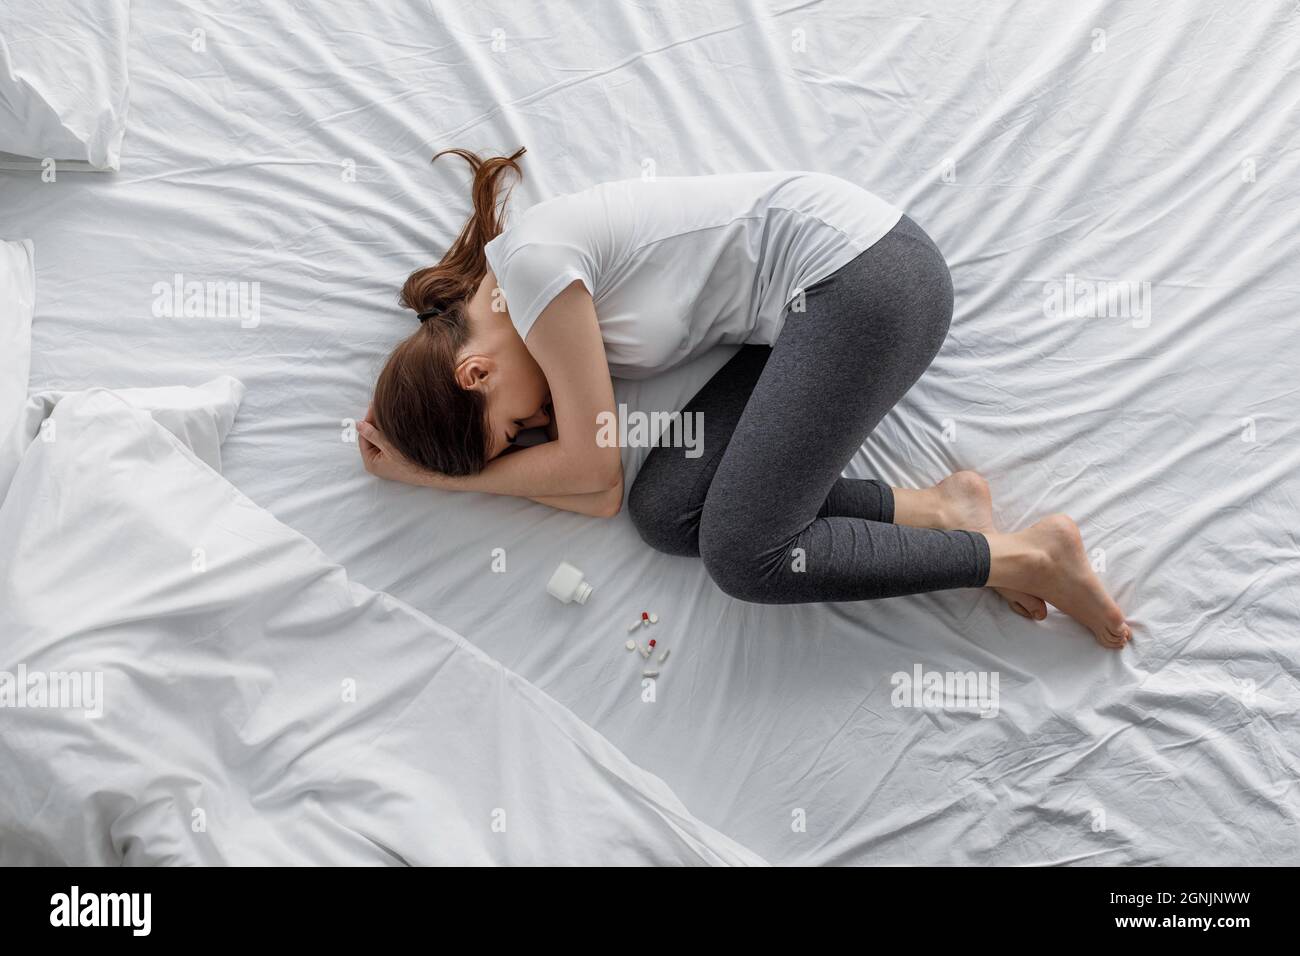 Traurige Verzweiflung junge kaukasische Frau, die unter Bauchschmerzen leidet, die mit einem Glas und verstreuten Pillen auf dem Bett lagen Stockfoto